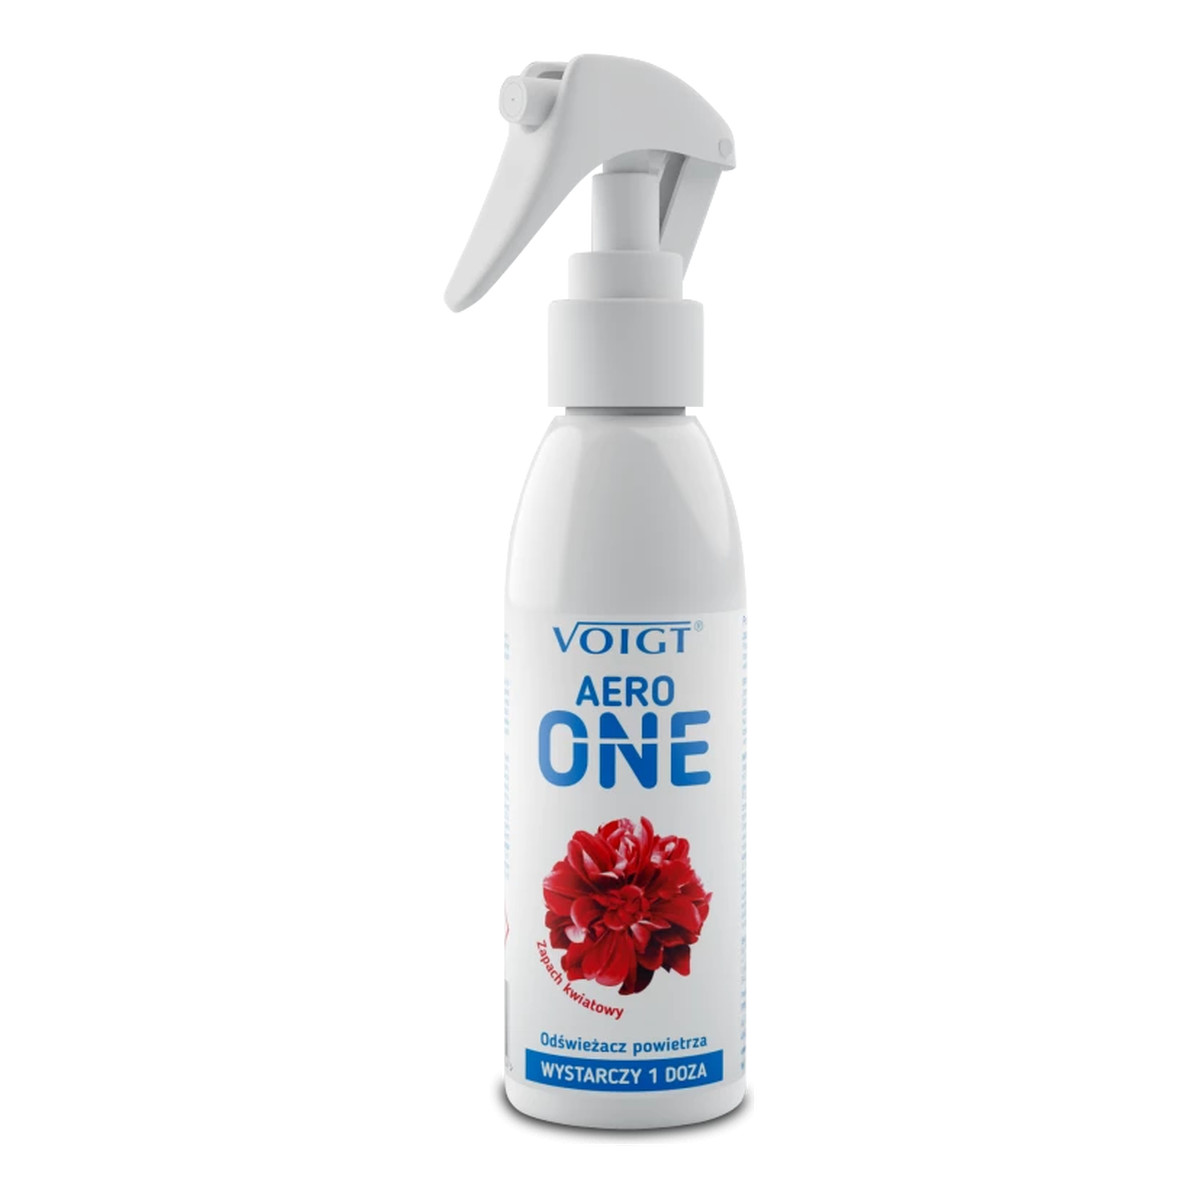 Voigt Aero One Odświeżacz powietrza- zapach kwiatowy 150ml